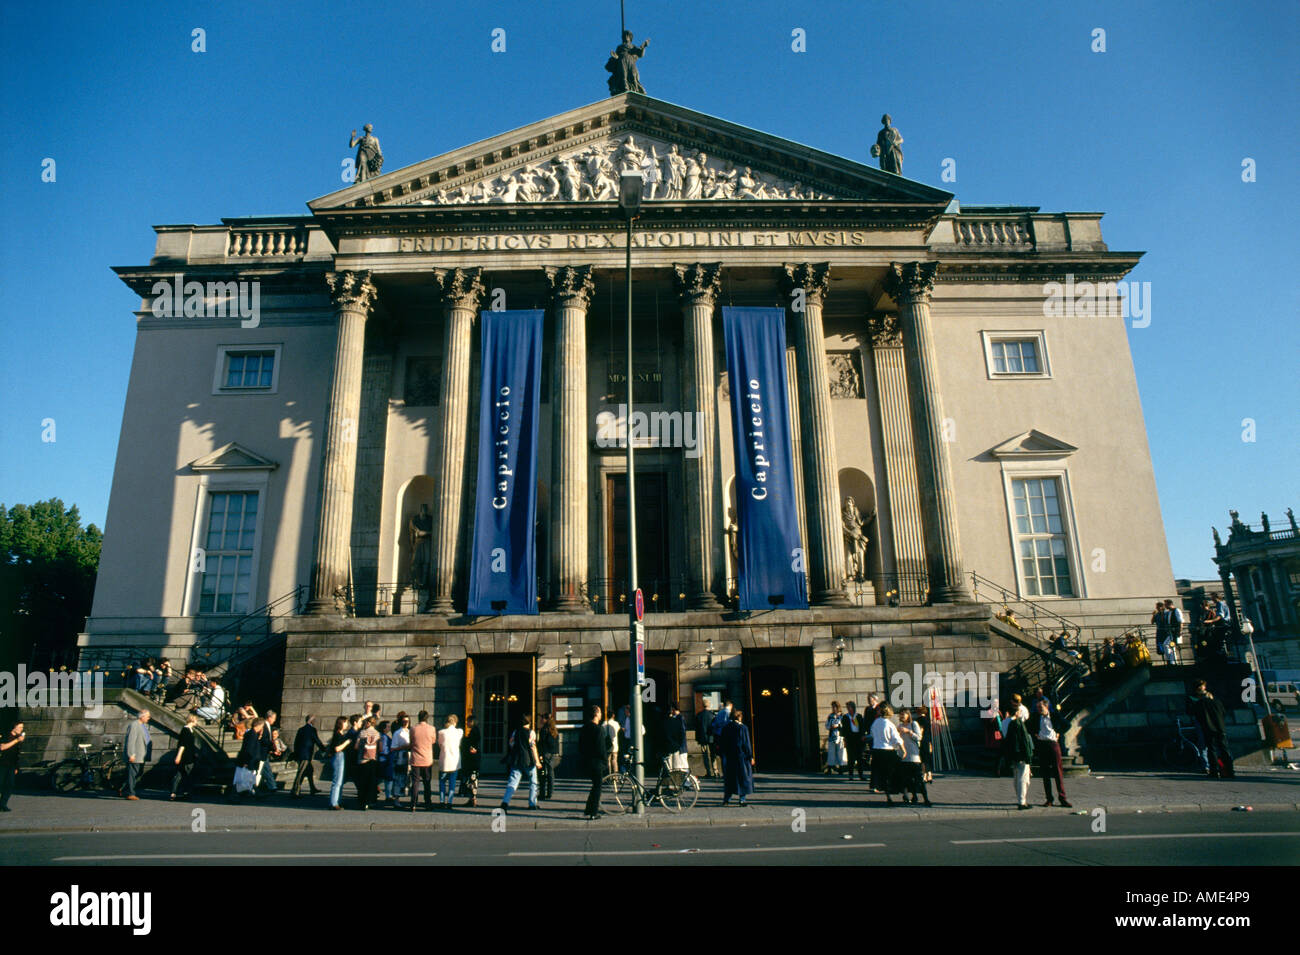 Un certain nombre de personnes sur l'avenue Unter den Linden sous la façade avec son fronton relief de Berlin s'Opéra de style classique à l'origine par Knobelsdorff 174143 reconstruite par Langhans et Rietschel 184344 et totalement restauré en 1986 Banque D'Images